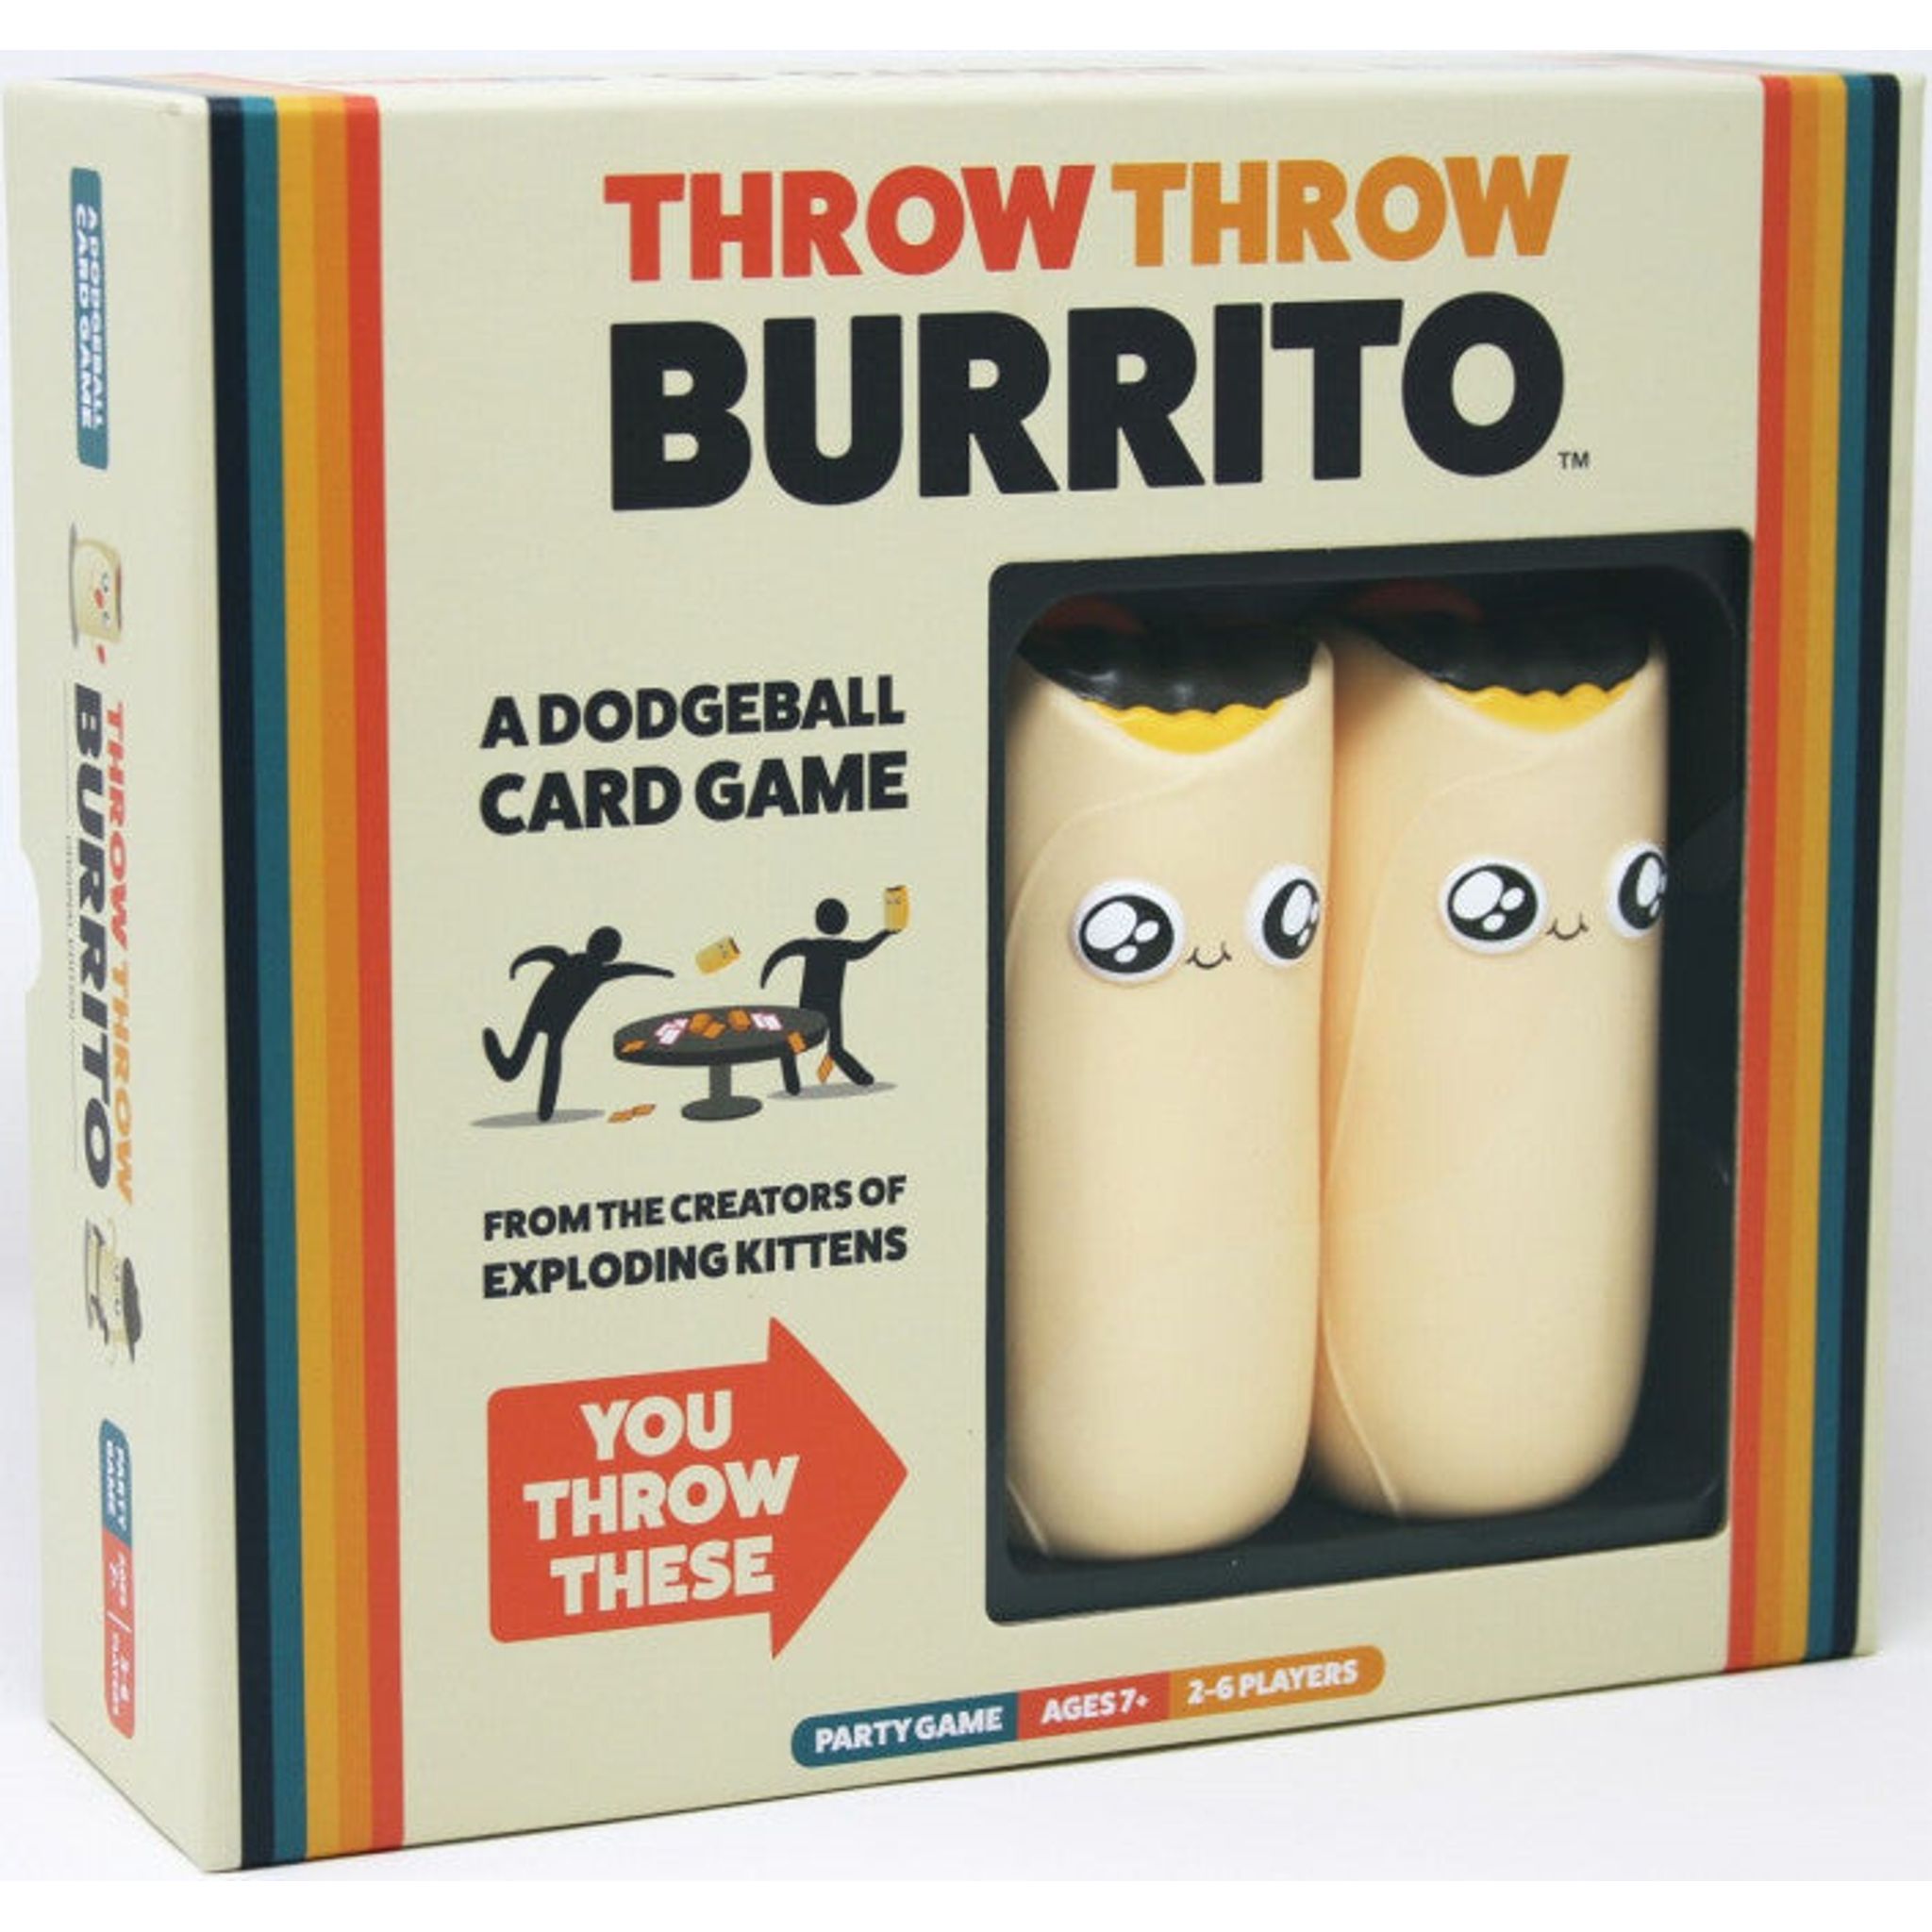 Throw Throw Burrito - Toybox Tales